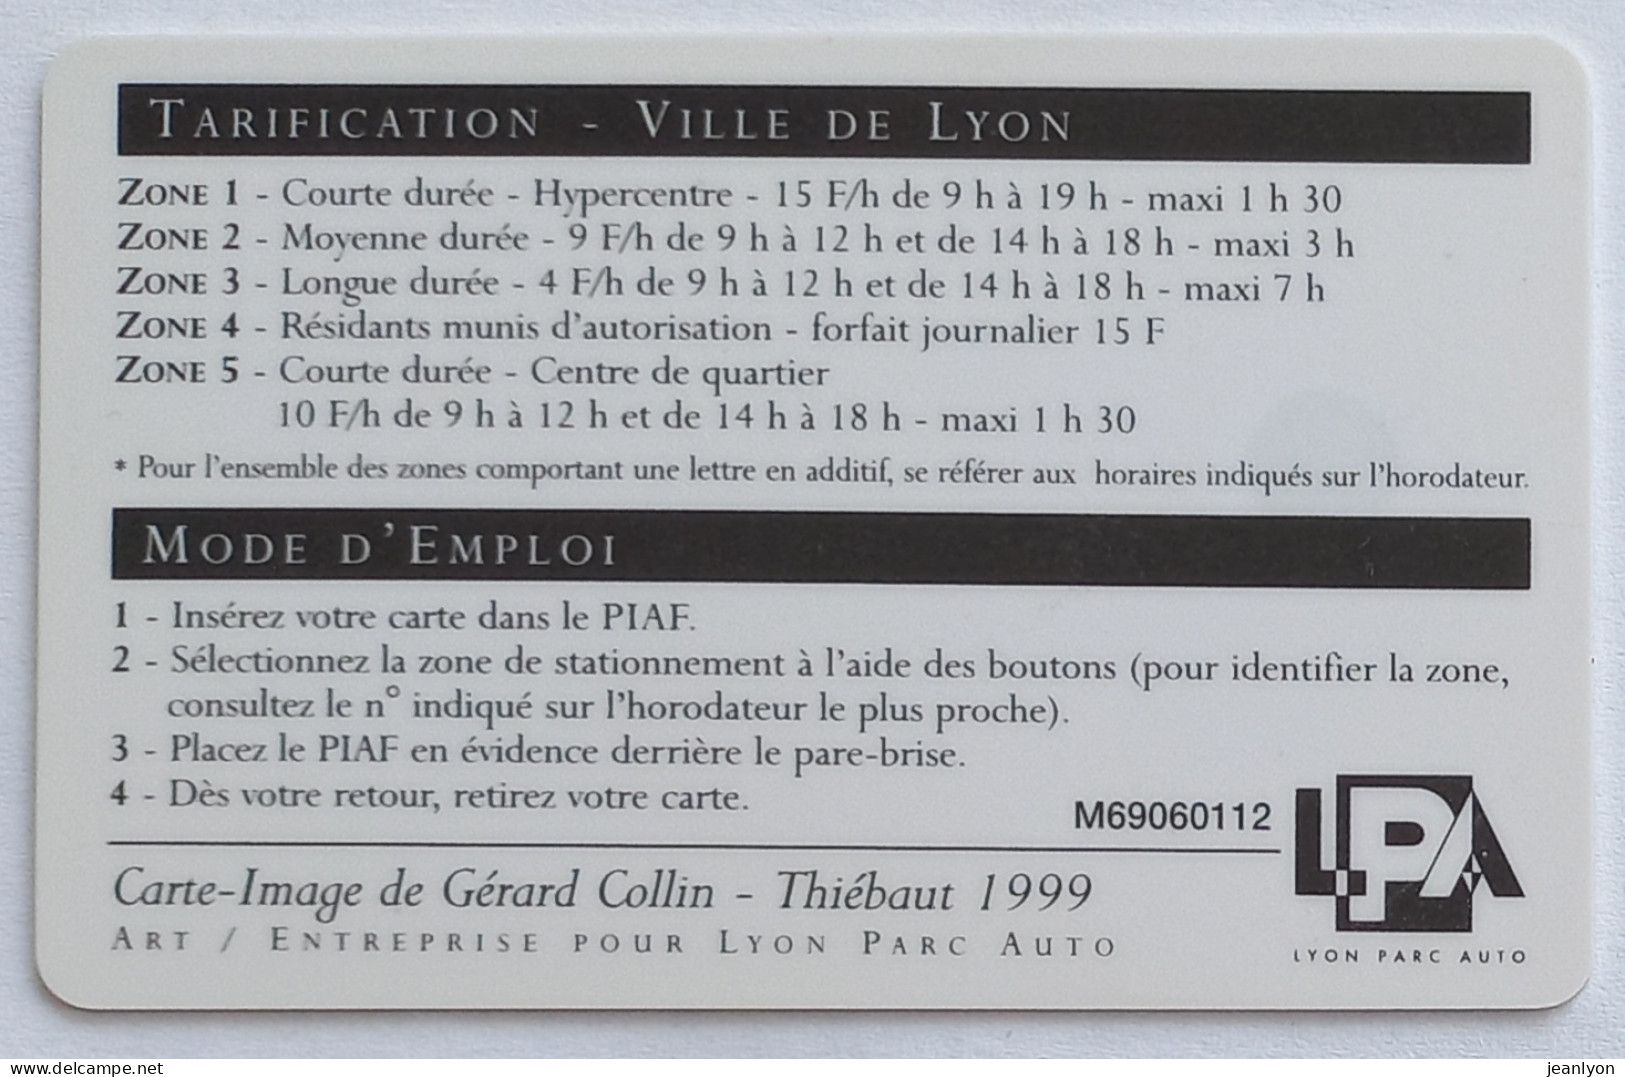 PIAF LYON - Carte Stationnement 1999 - PERSEE DELIVRANT ANDROMEDE - Art Statue / Mythologie - Musée Des Beaux Arts Lyon - Cartes De Stationnement, PIAF